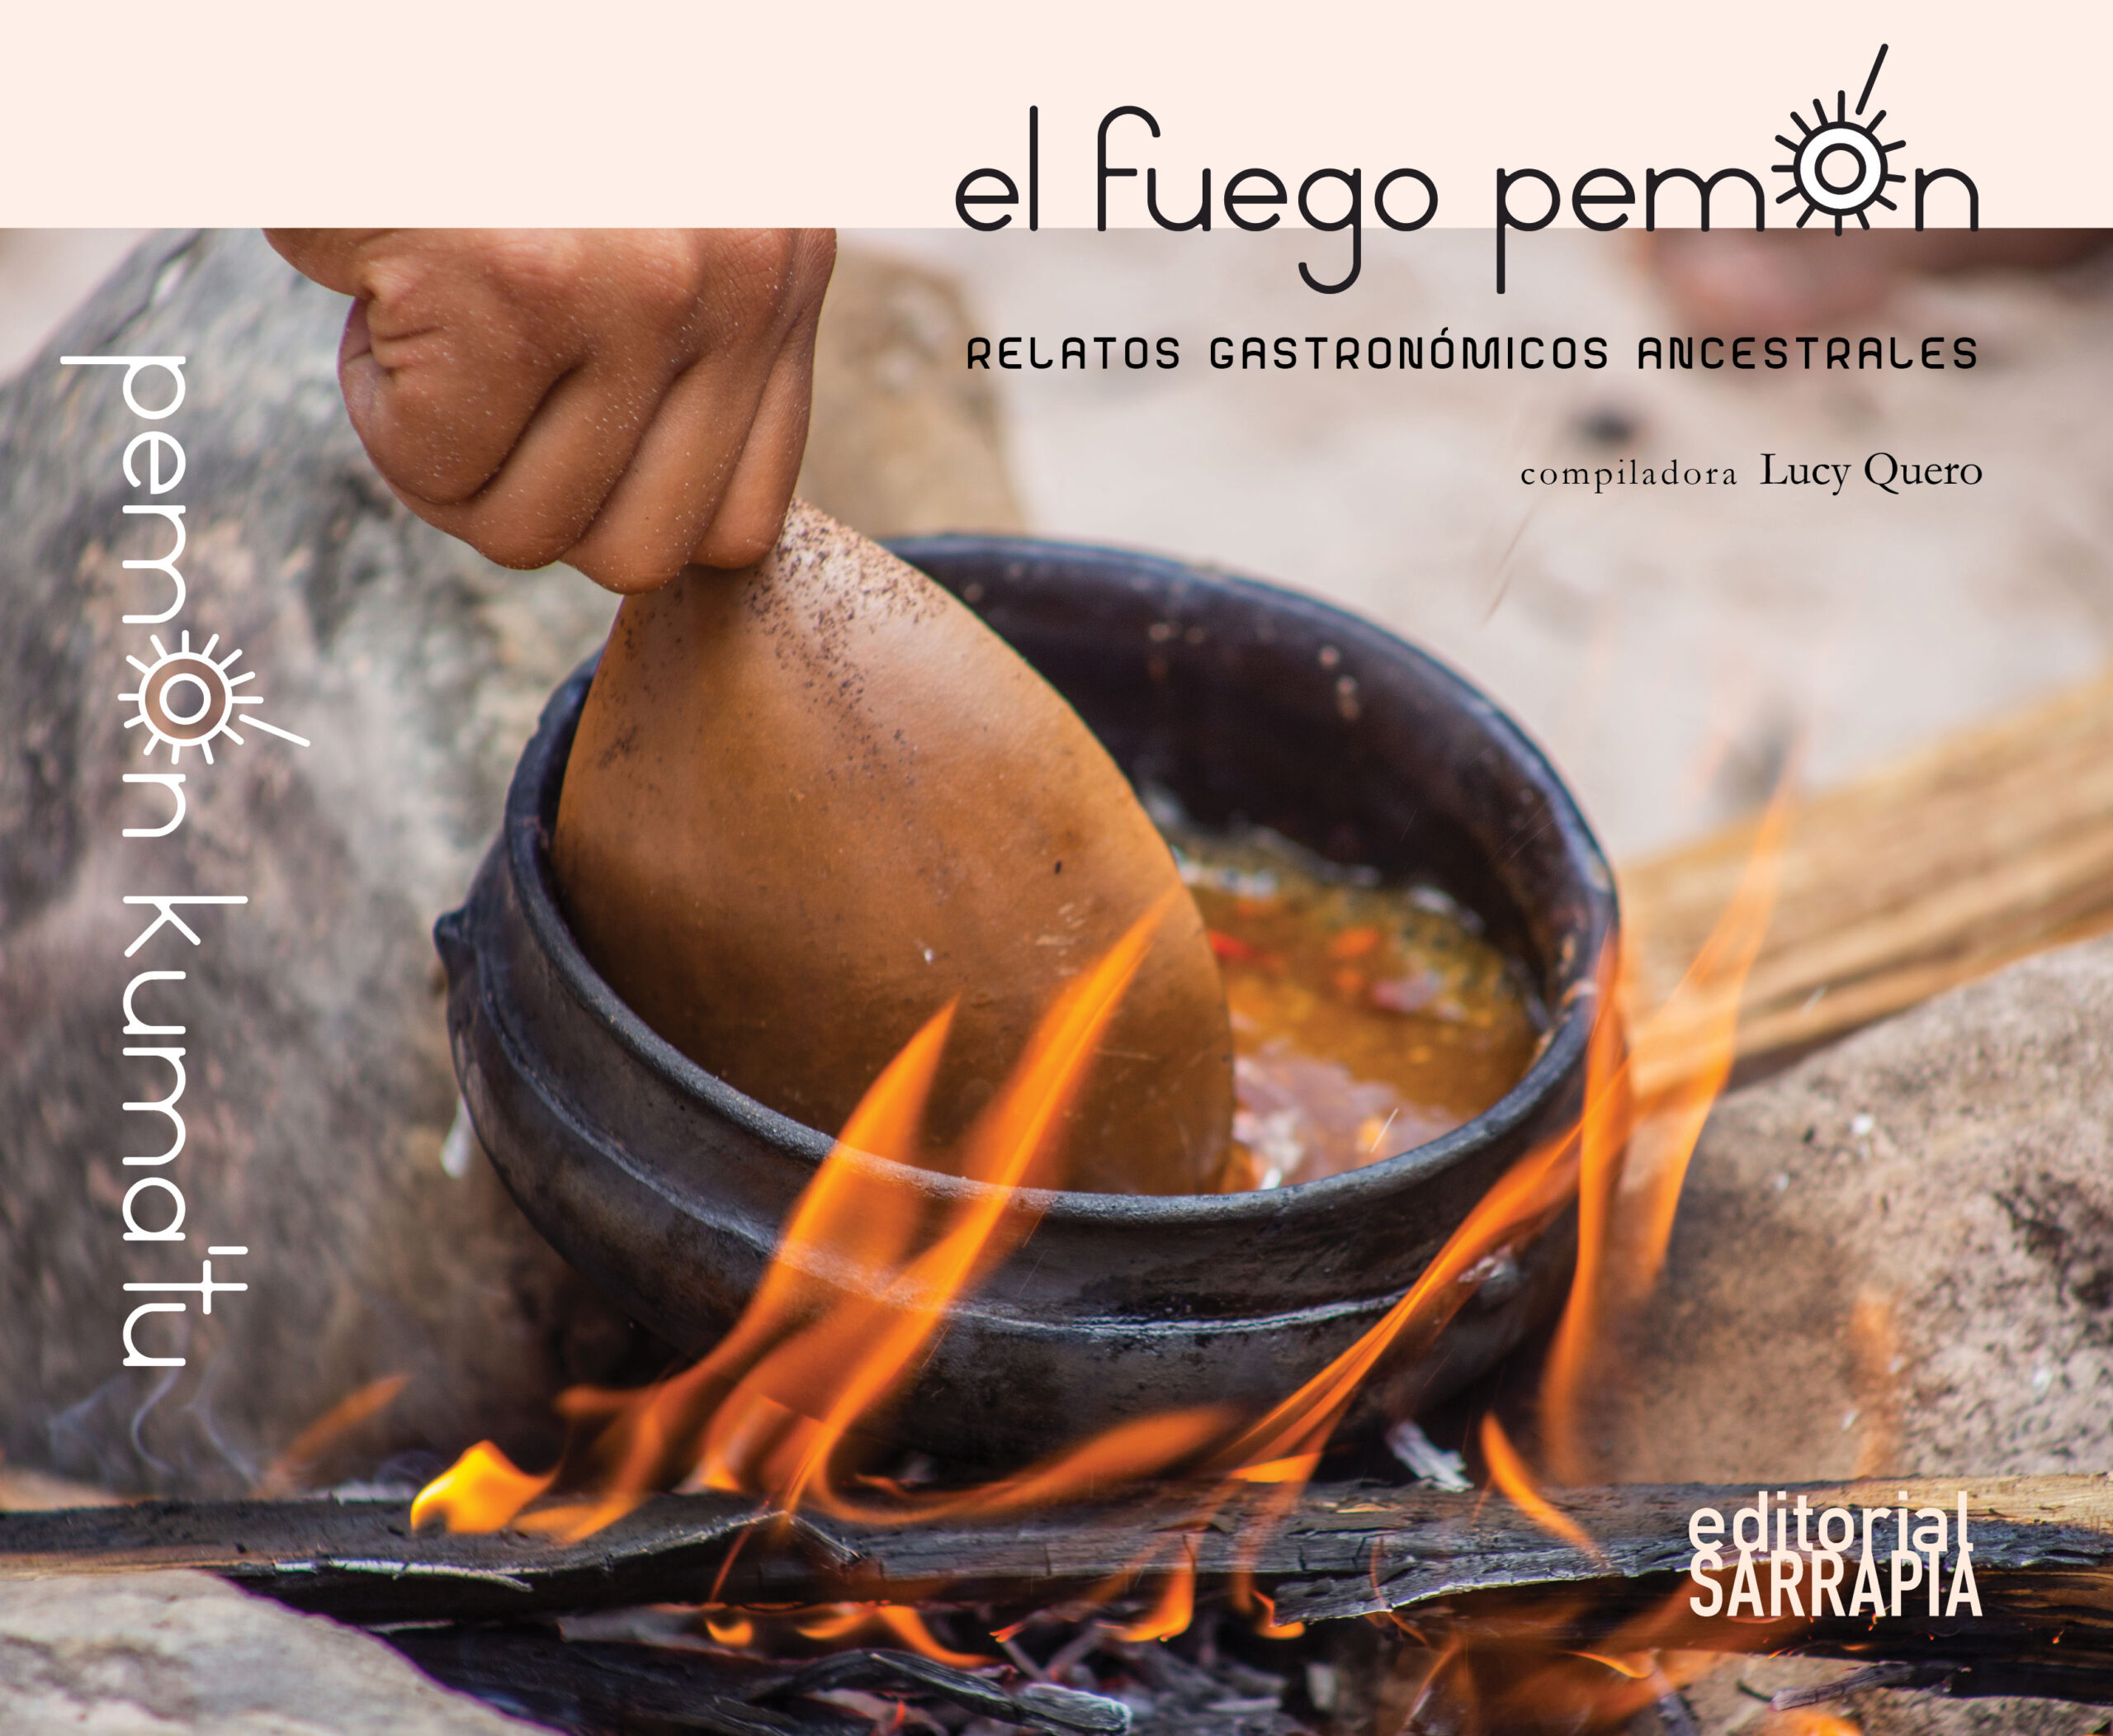 La gastronomía venezolana se enriquece con “El fuego pemón”